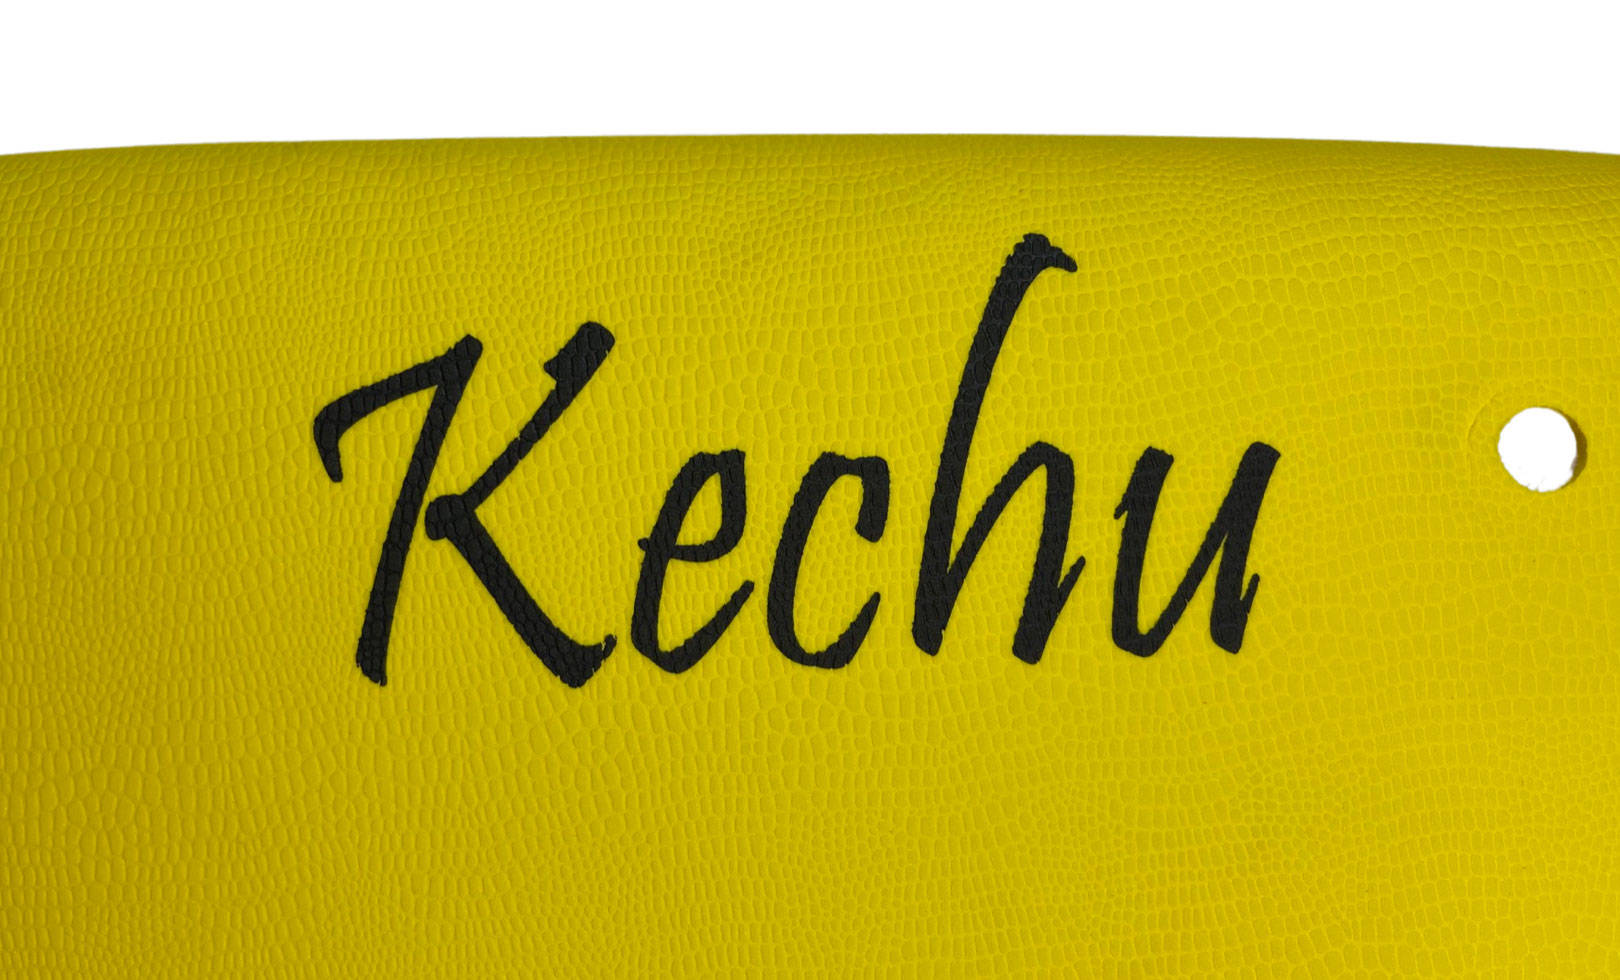 Softboard Kechu 5’11”